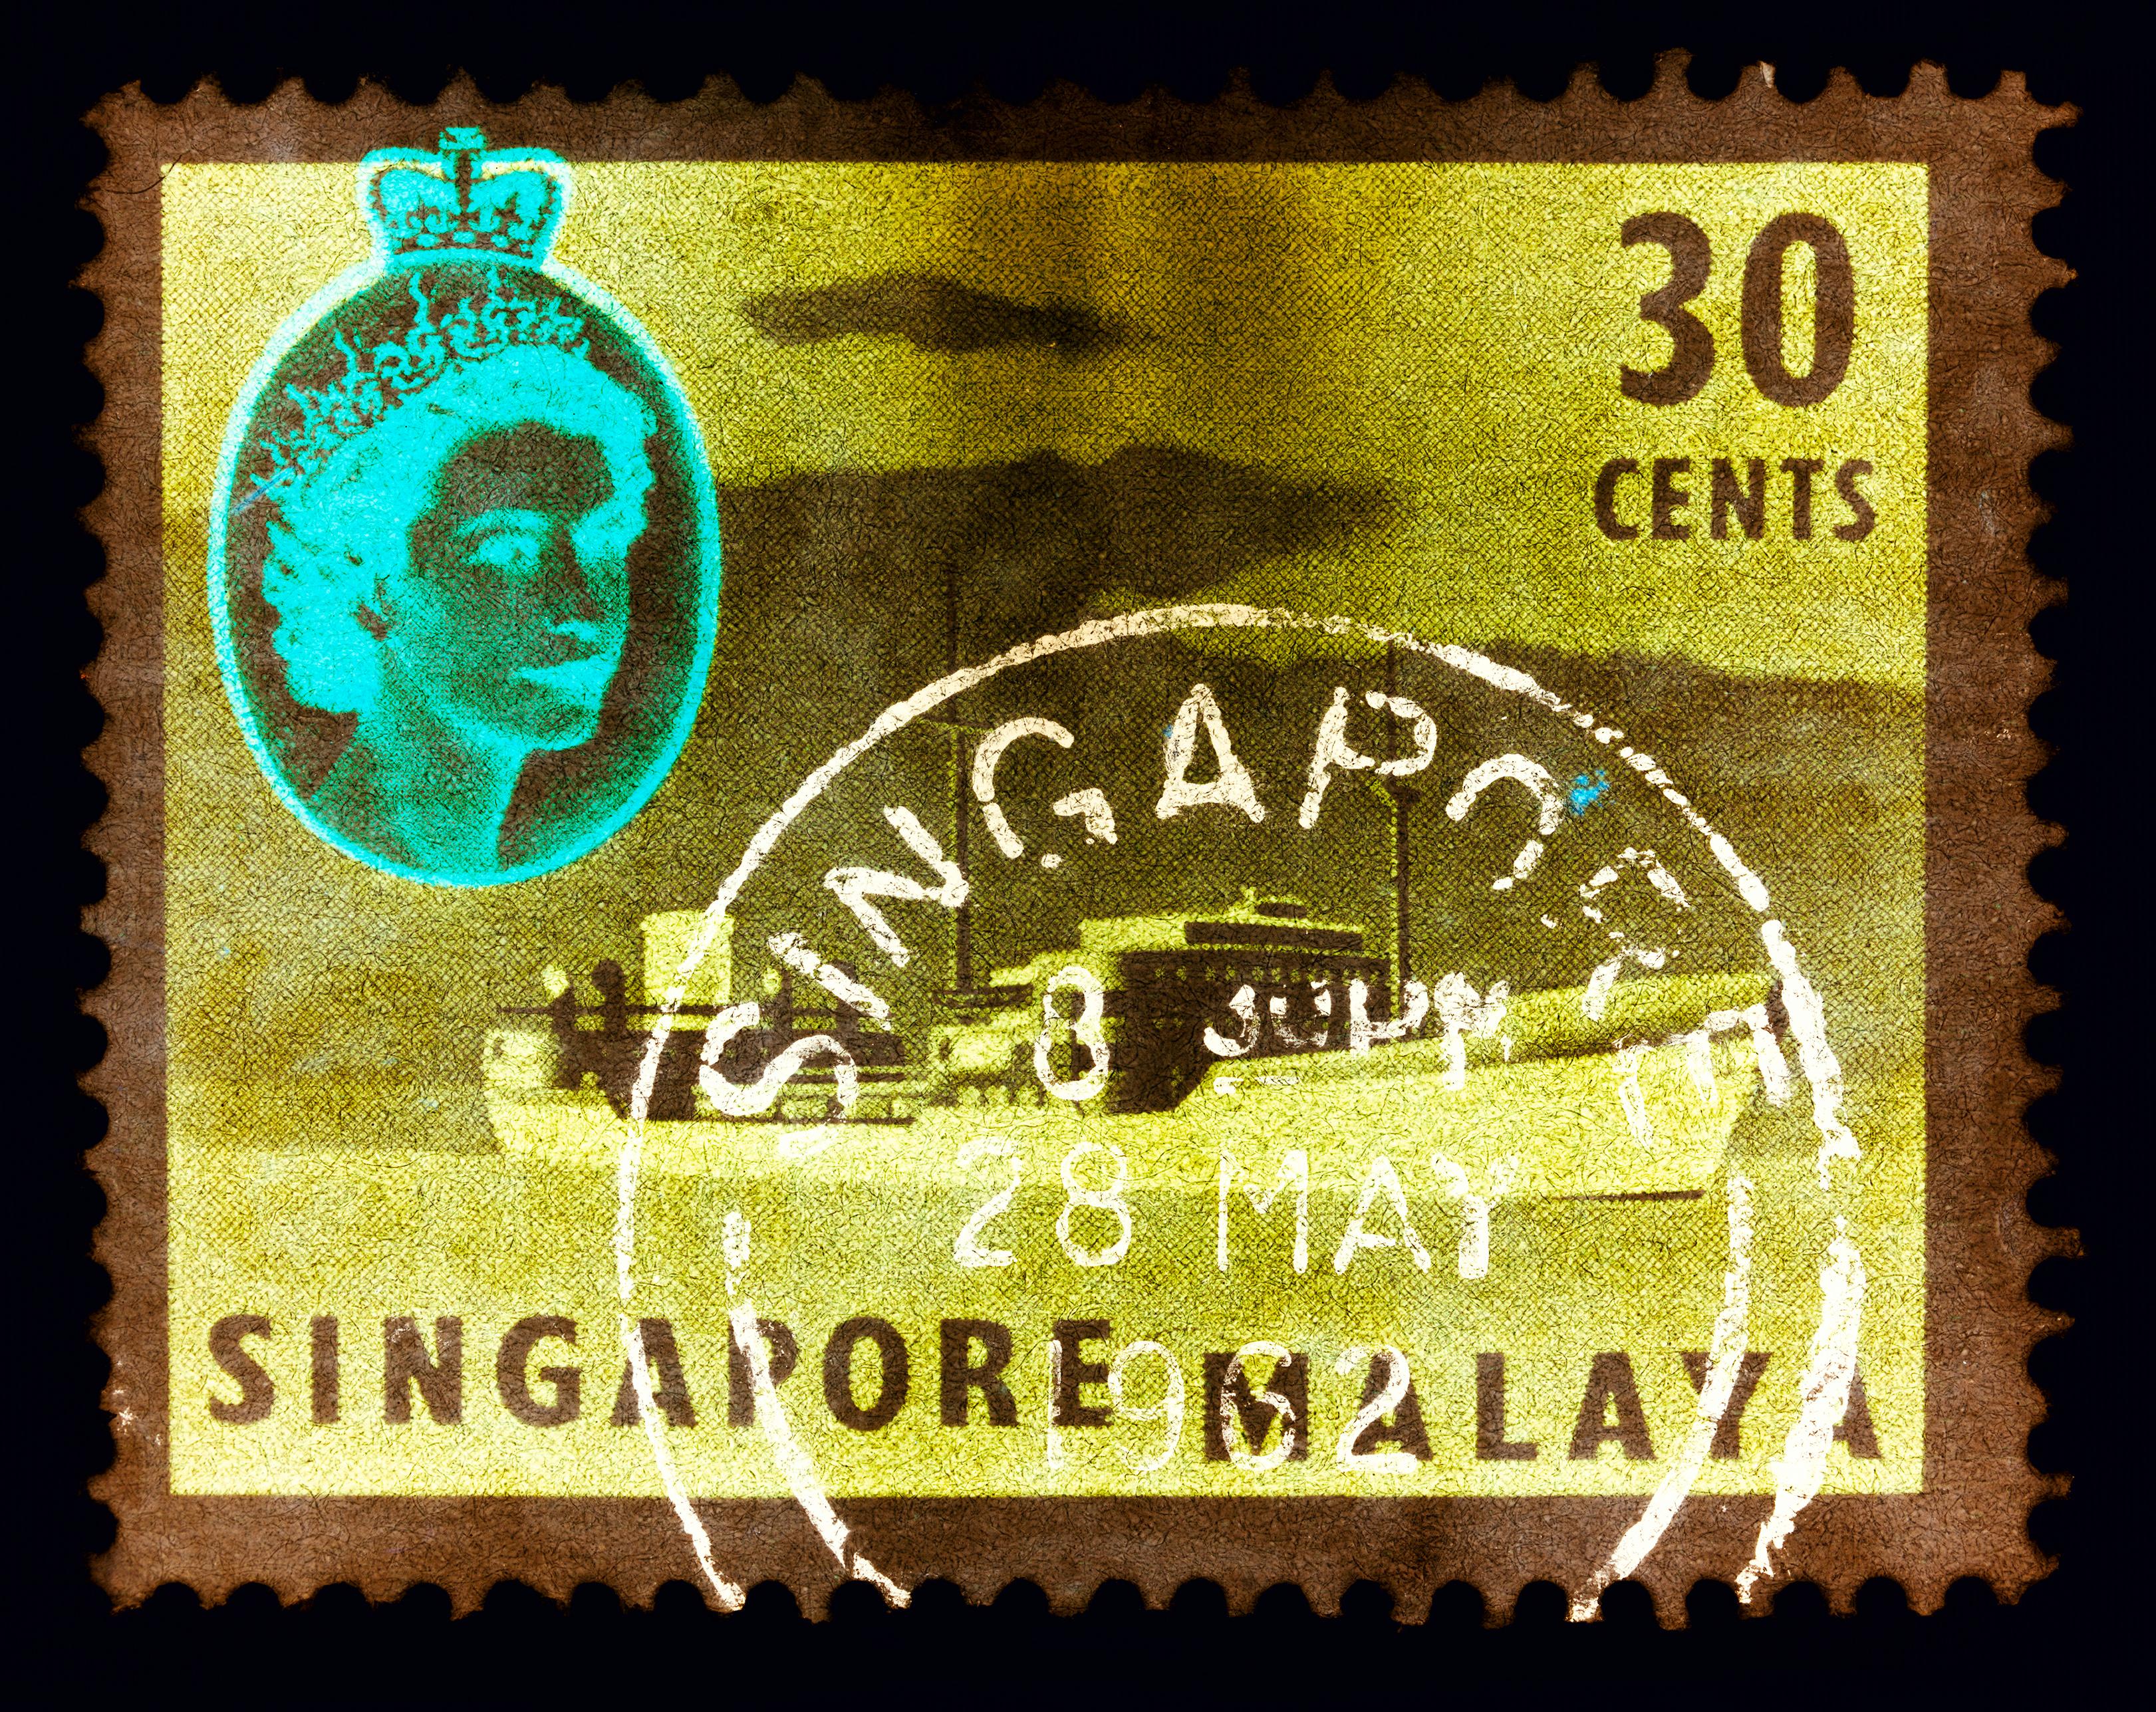 Singapur Singapore Stempel-Kollektion, 30 Cents QEII Öl Tanker Khaki - Pop-Art-Farbfoto